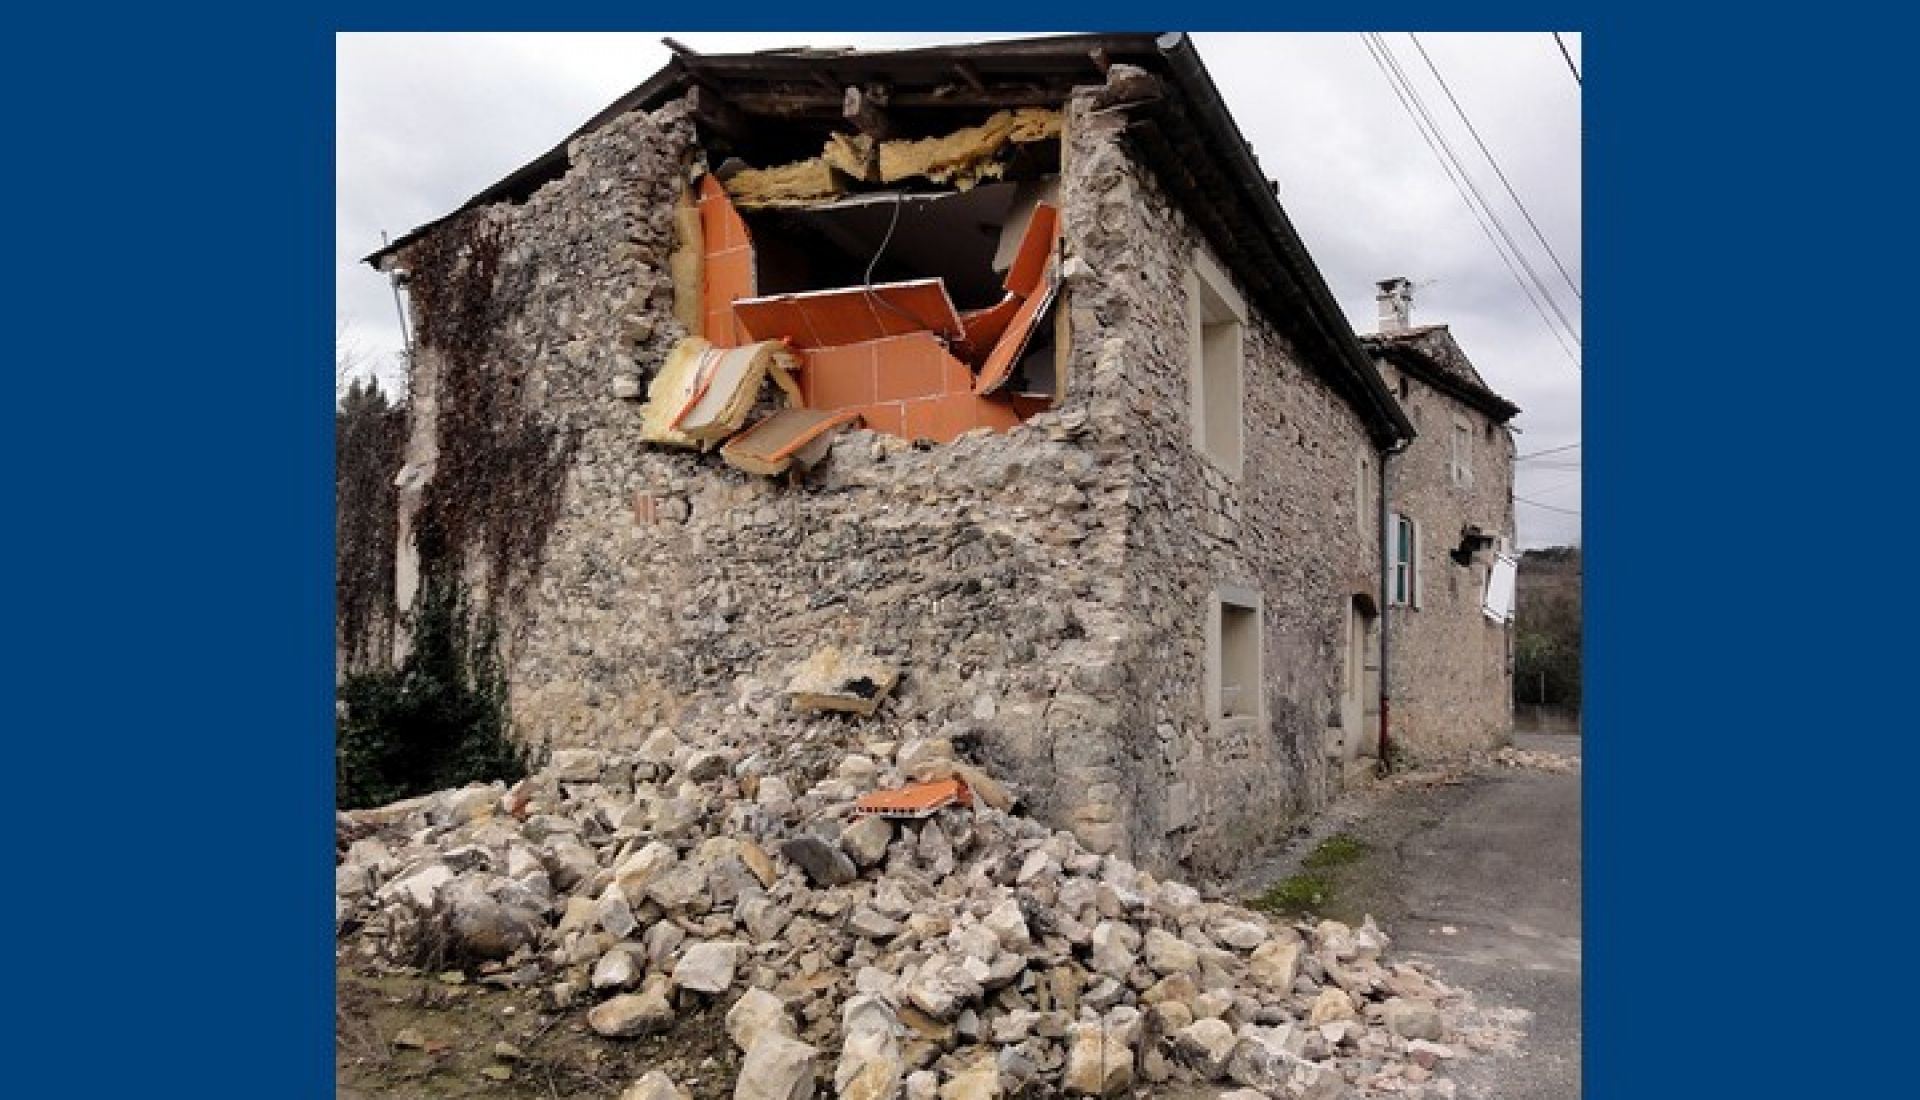 Le séisme du Teil(M 5.4) du 11 Novembre 2019:Quelles implications pour la caractérisation du risque sismique dans la vallée du Rhône?